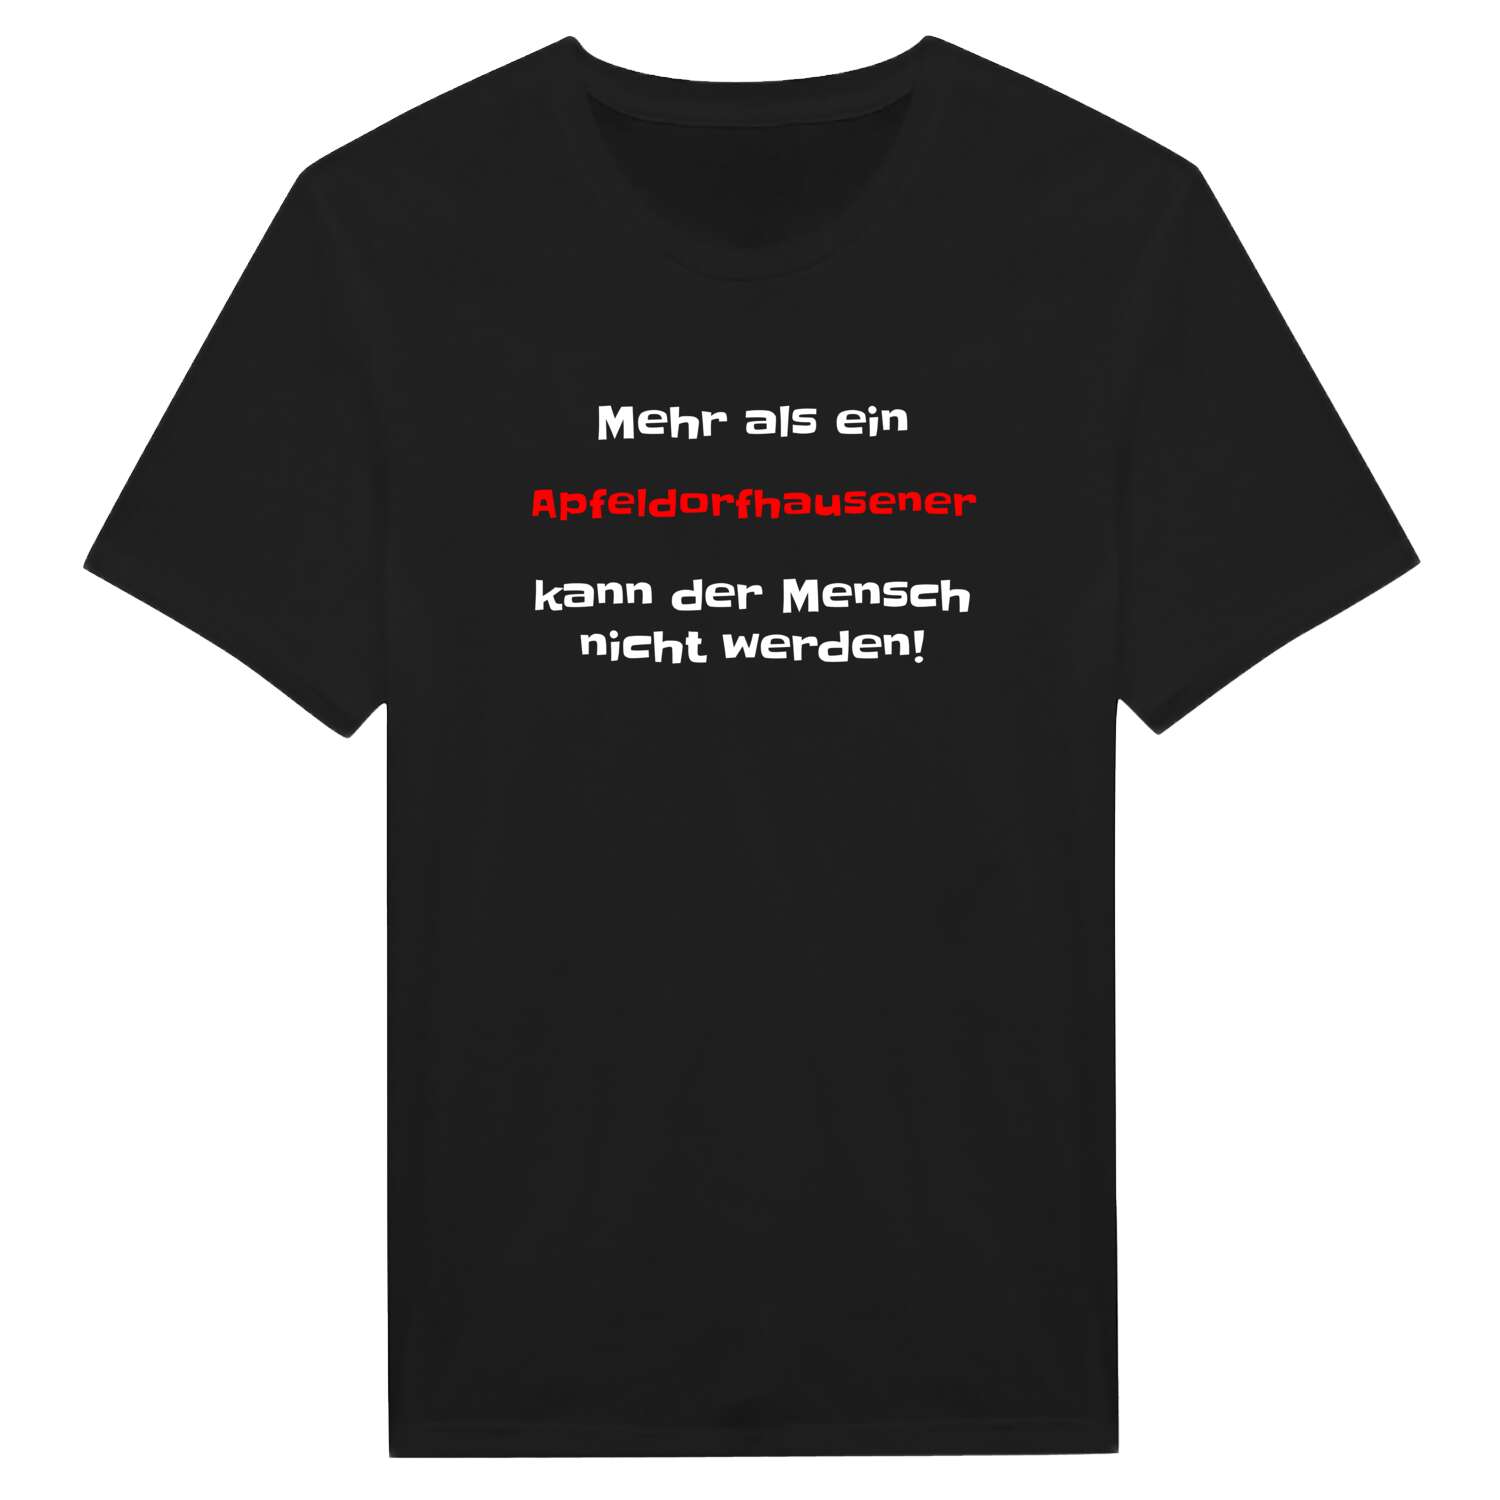 Apfeldorfhausen T-Shirt »Mehr als ein«